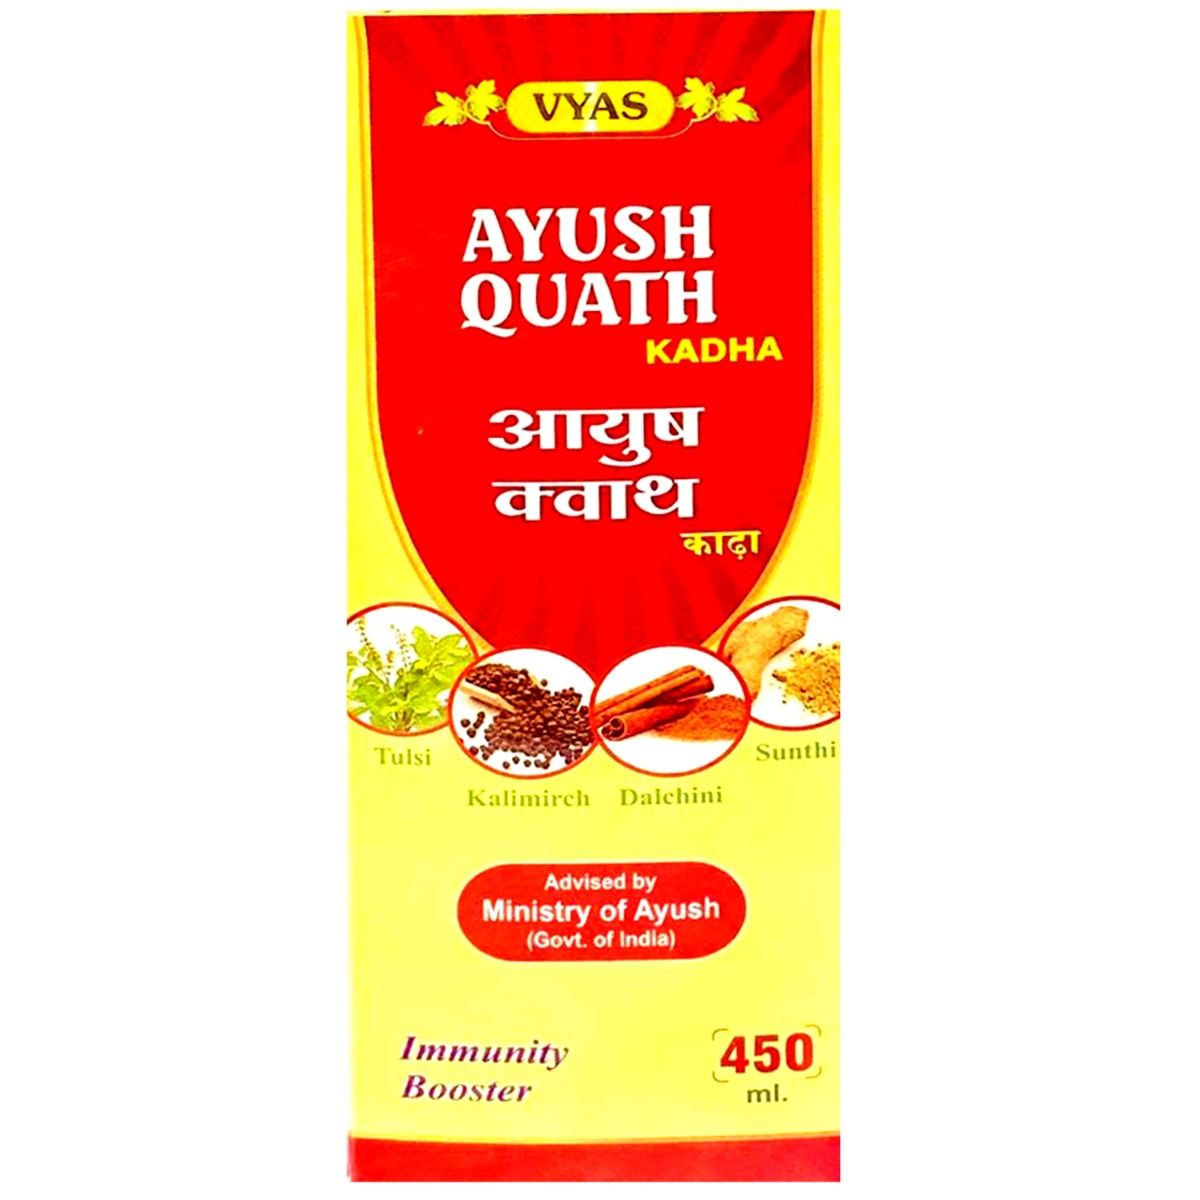 Buy Vyas Ayush Quath Kadha, 450 ml Online